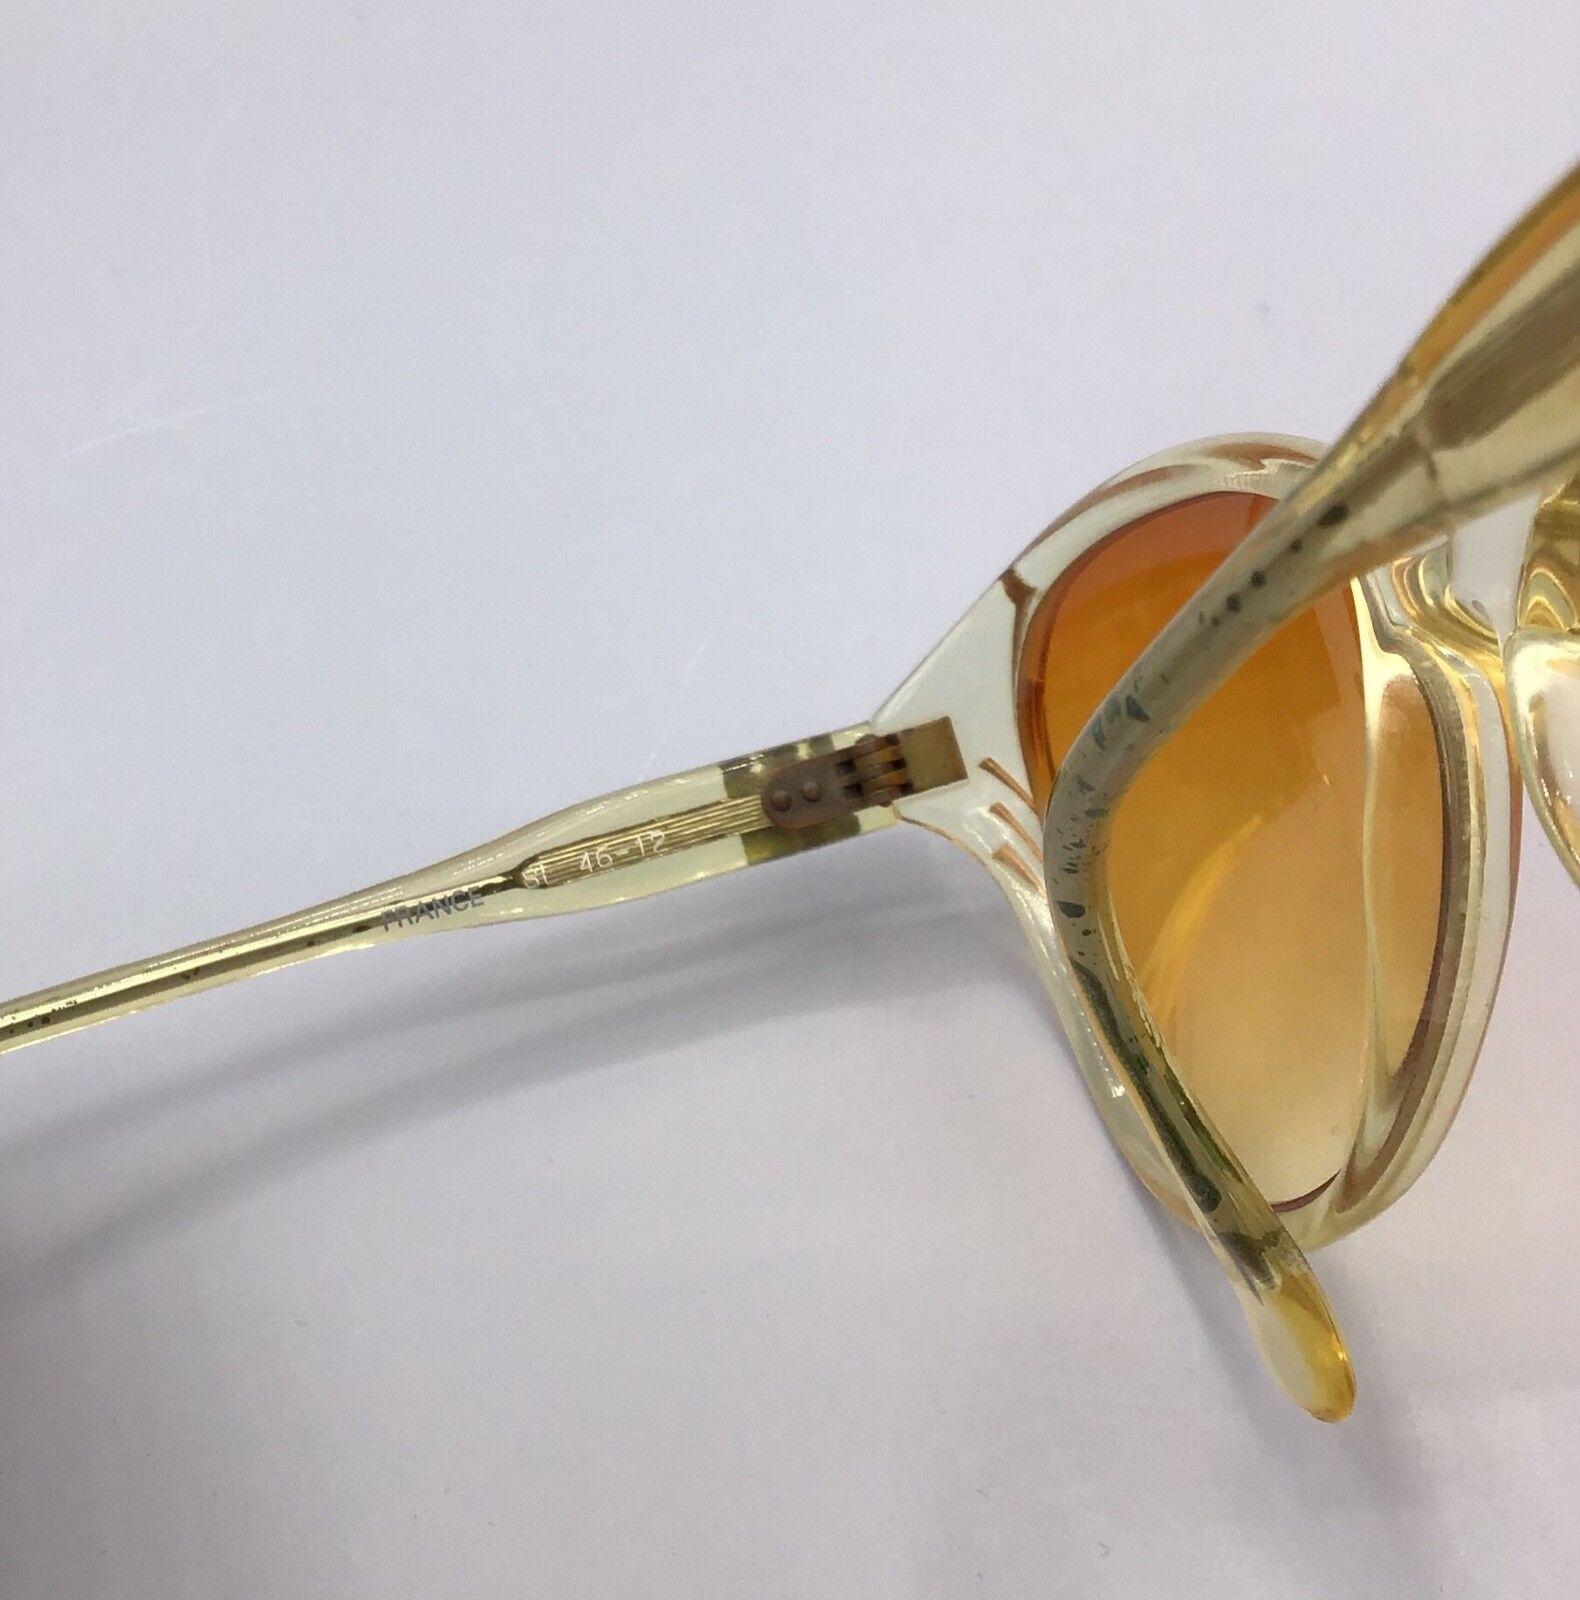 occhiale vintage Pierre leroic da sole Sunglasses sonnenbrillen Lunettes gafas